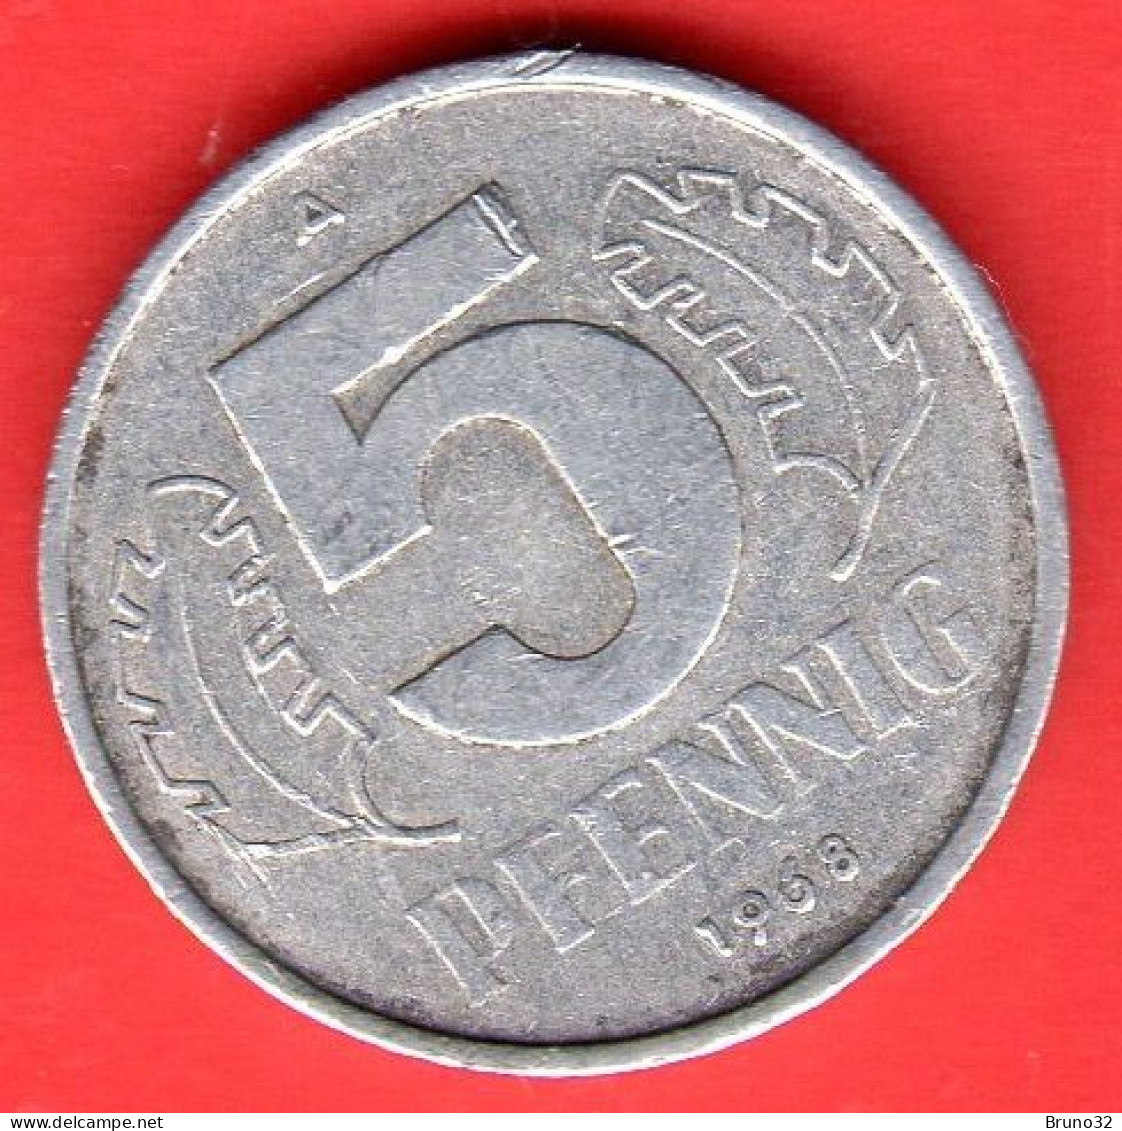 RDA - DDR - Germany - 1958 - 5 Pfennig - BB/VF - Come Da Foto - 5 Pfennig